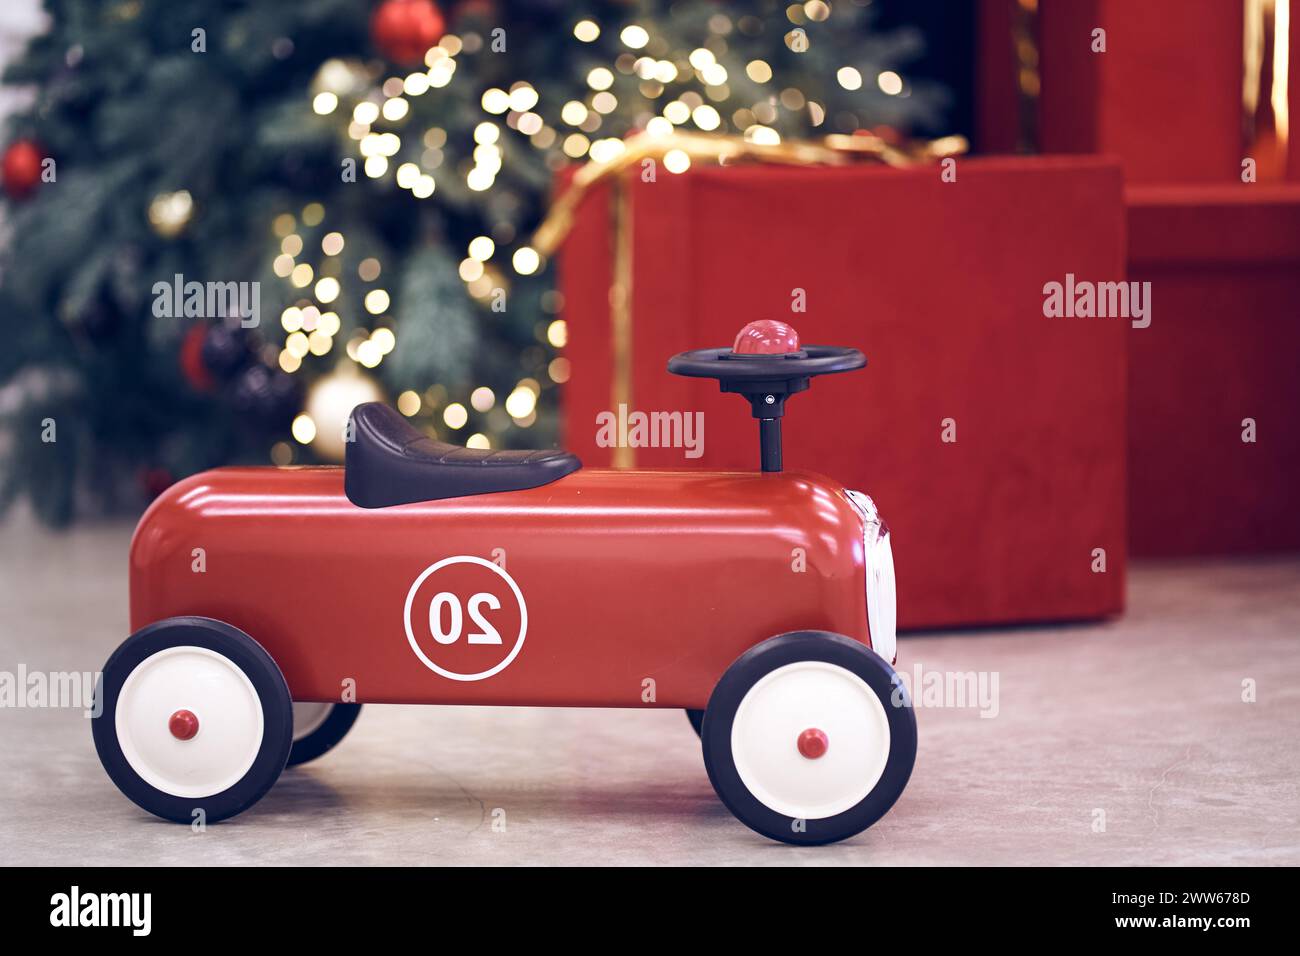 Blick auf das rote Retro-Auto für Kinder auf dem Hintergrund von Geschenken in roten Schachteln mit goldenen Bögen, Weihnachtsbaumgirlande, Lichterketten, roten und blauen Kugeln. Hintergrund, Kopierraum, Bokeh. Stockfoto